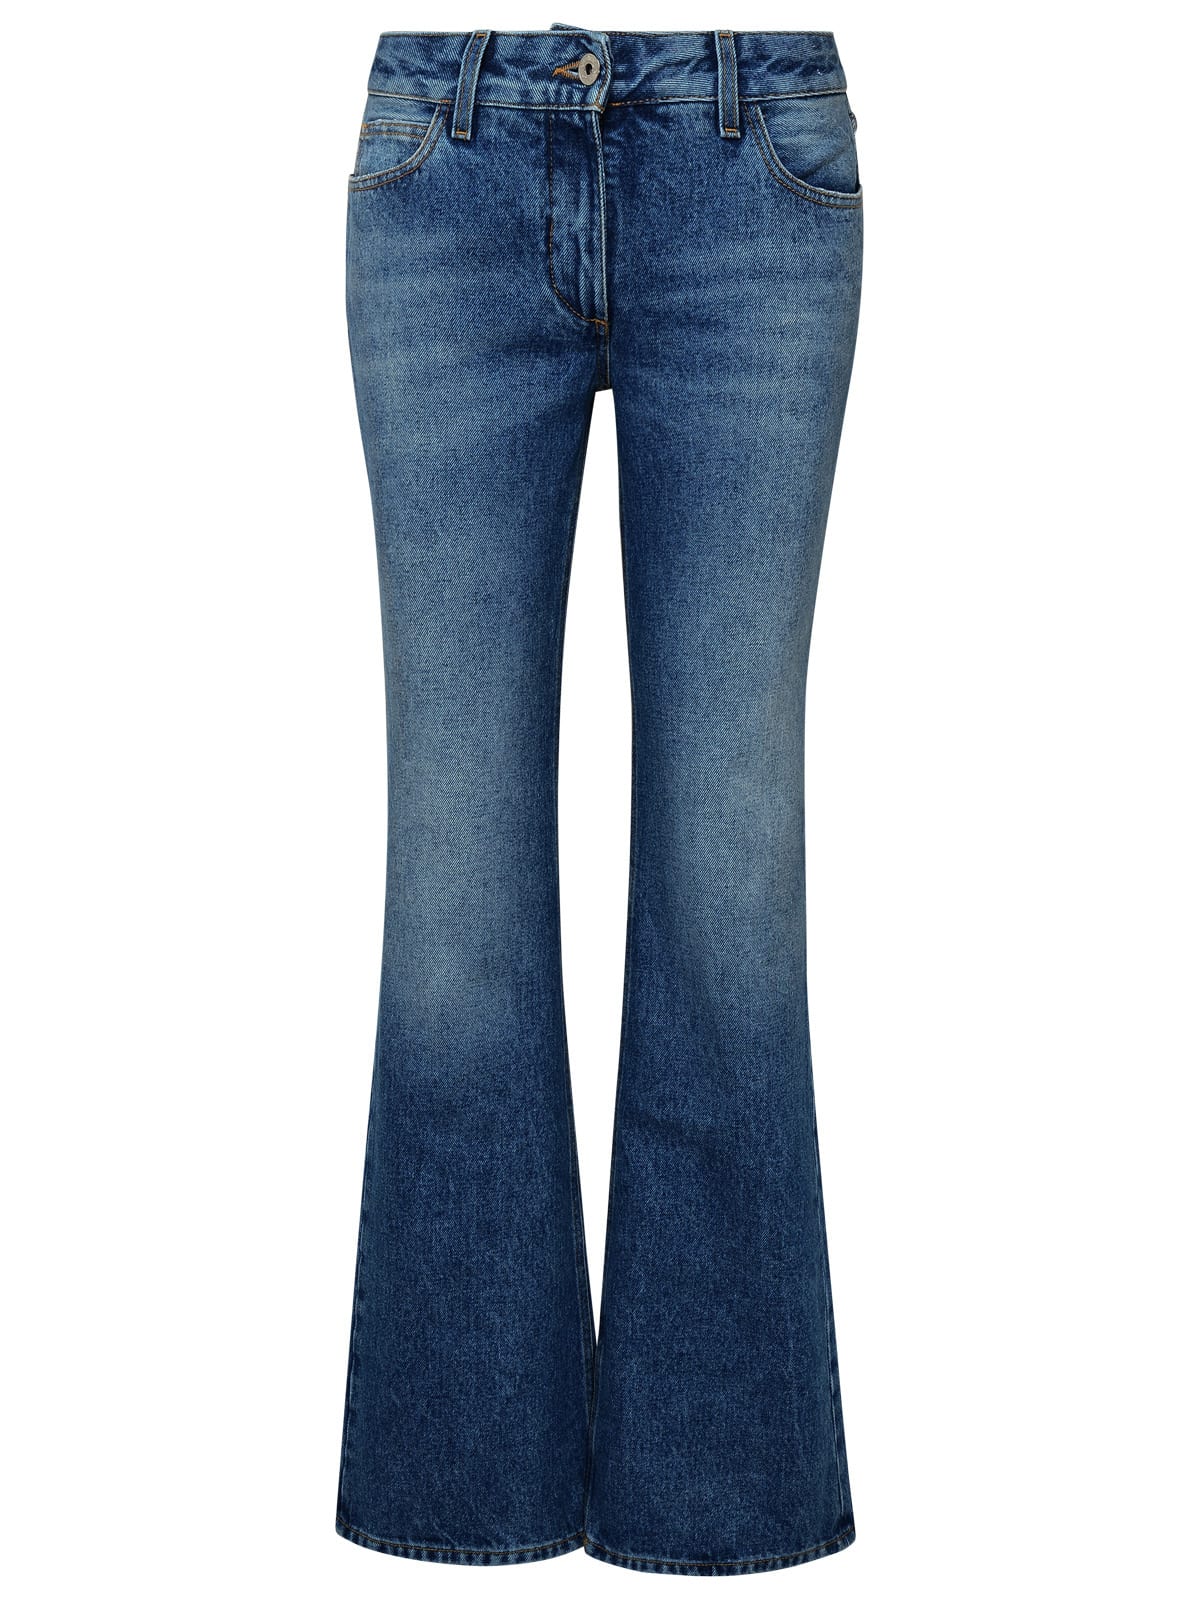 Flare Blue Cotton Jeans